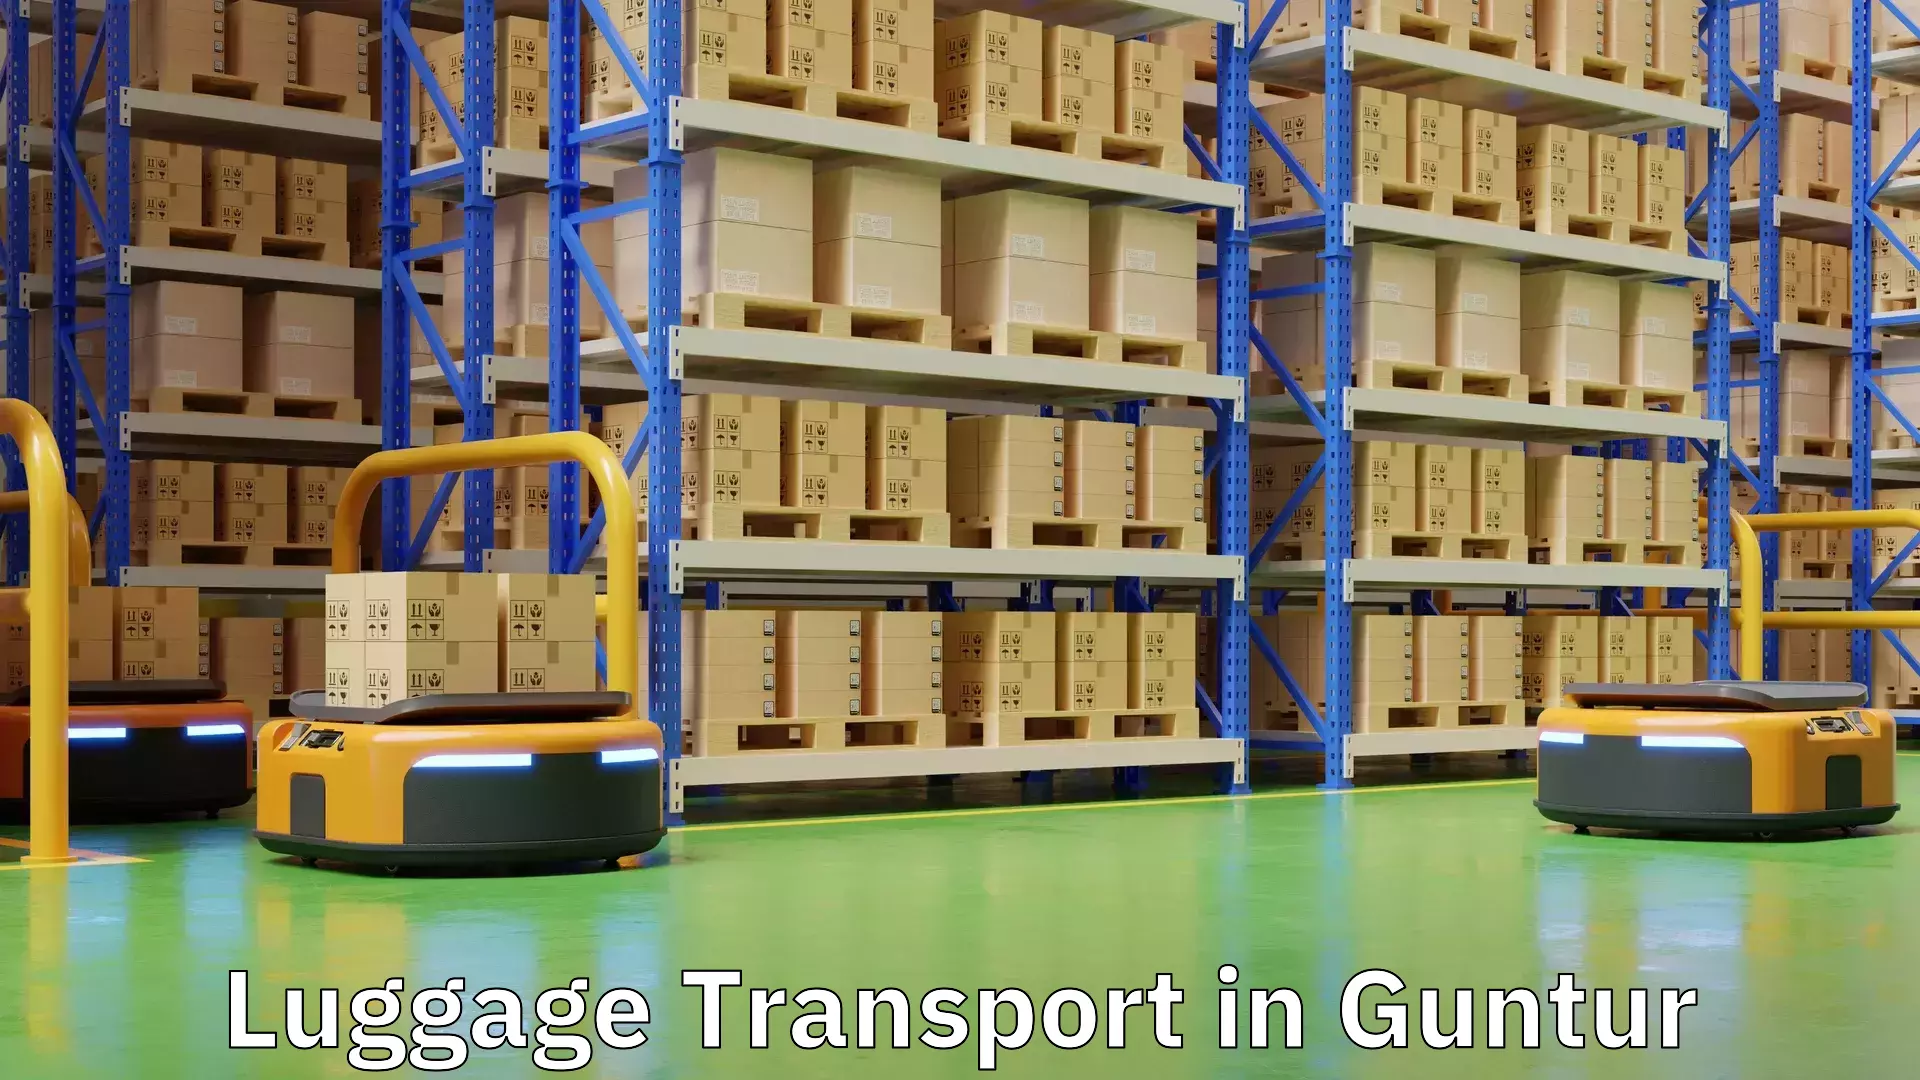 Multi-destination luggage transport in Guntur